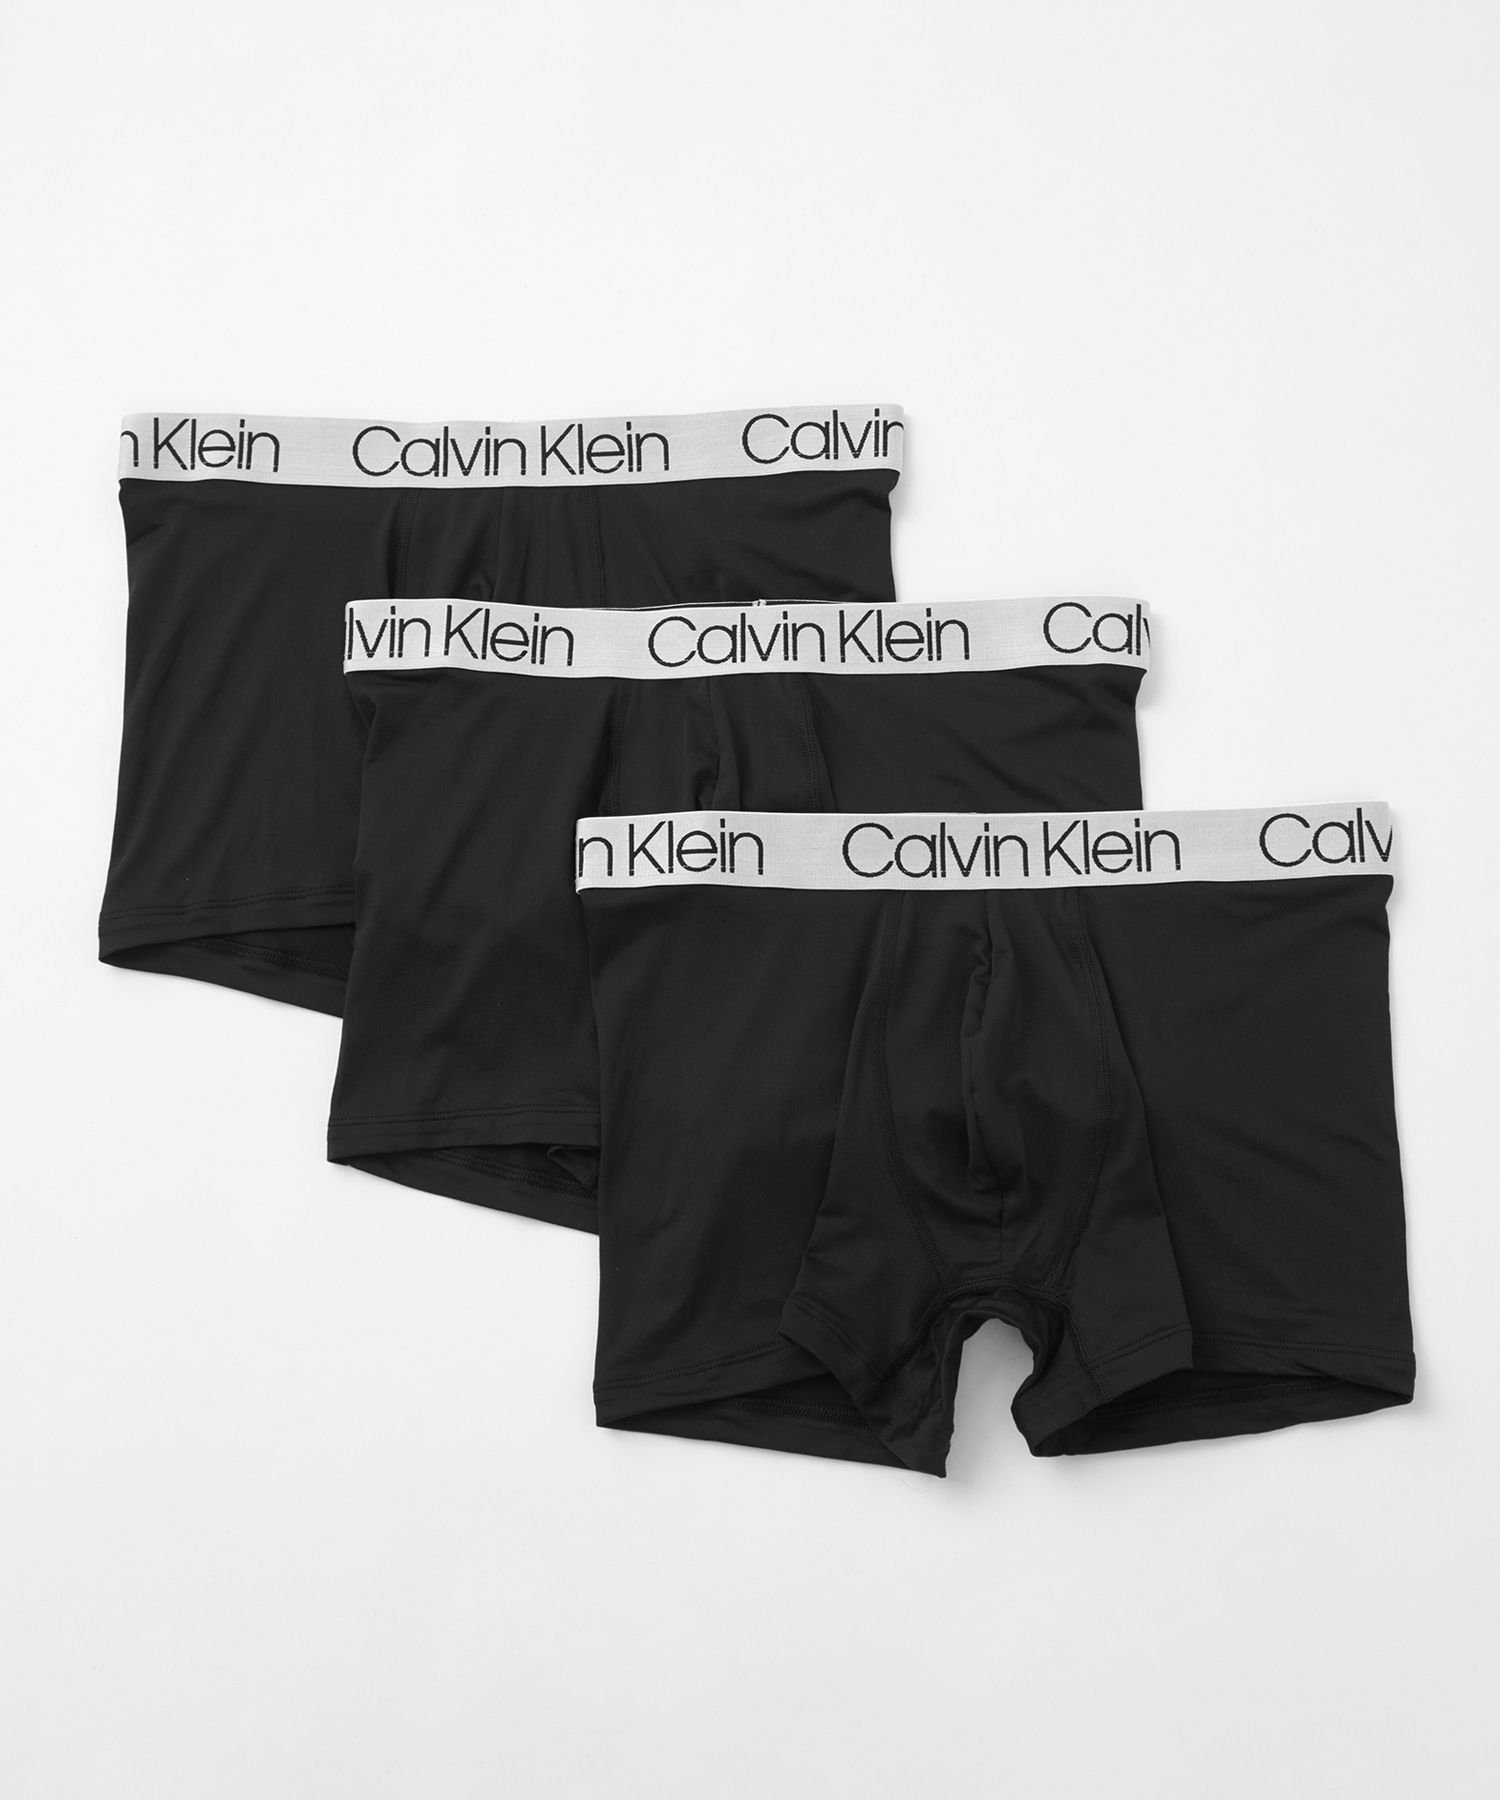 Calvin Klein Underwear (M)【公式ショップ】 カルバンクライン クロマティック ボクサーパンツ 3枚パック Calvin Klein Underwear NP2..